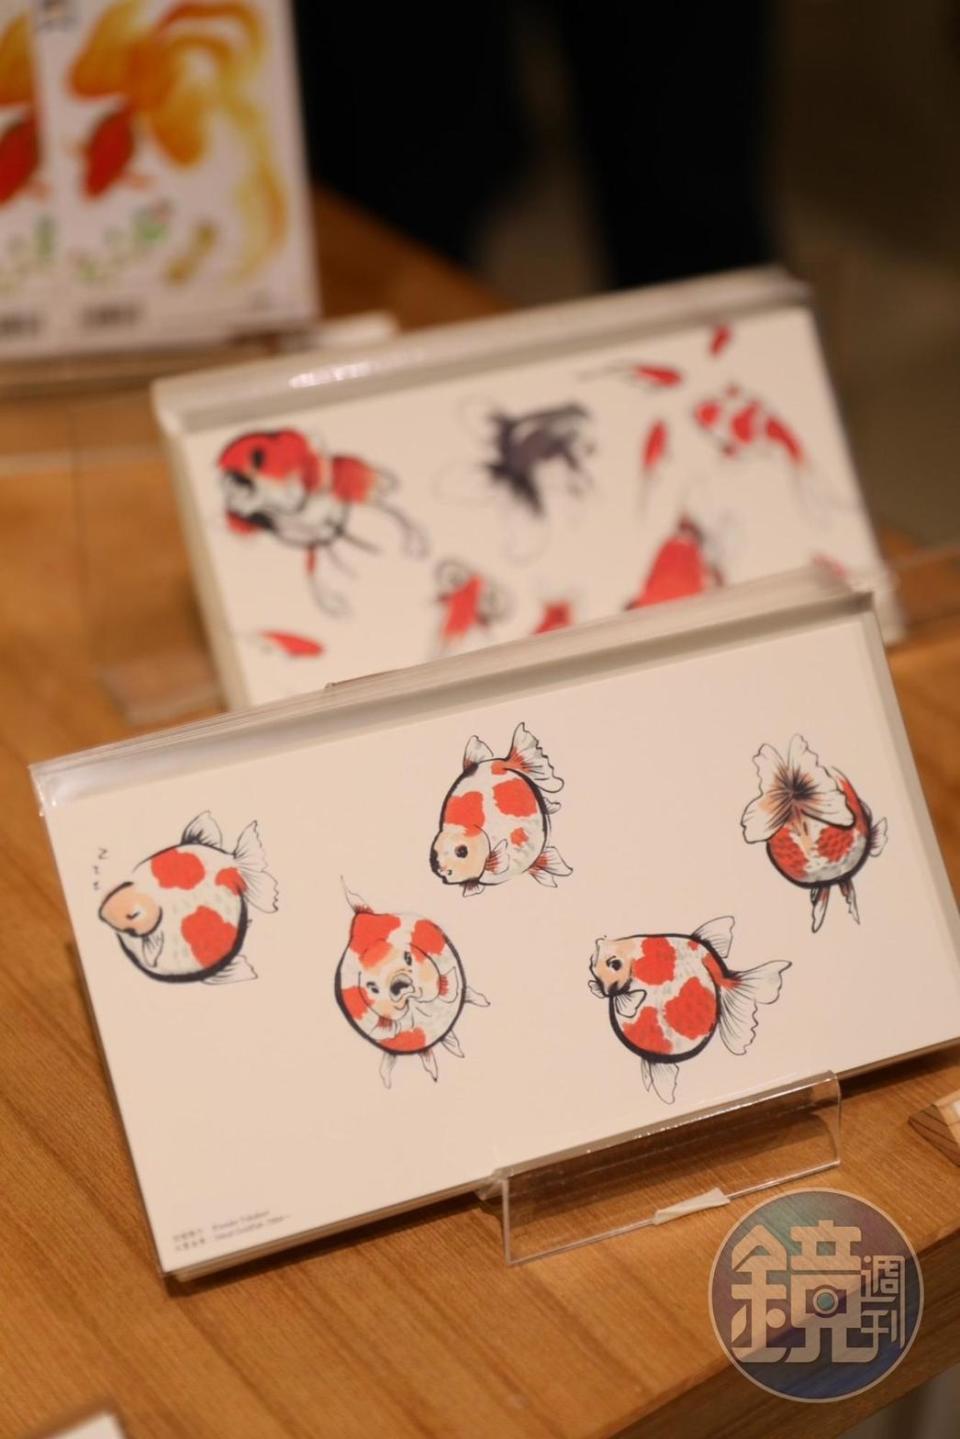 金魚畫師深堀隆介的作品也印製成了討喜的明信片，於展場外的紀念品區販售。